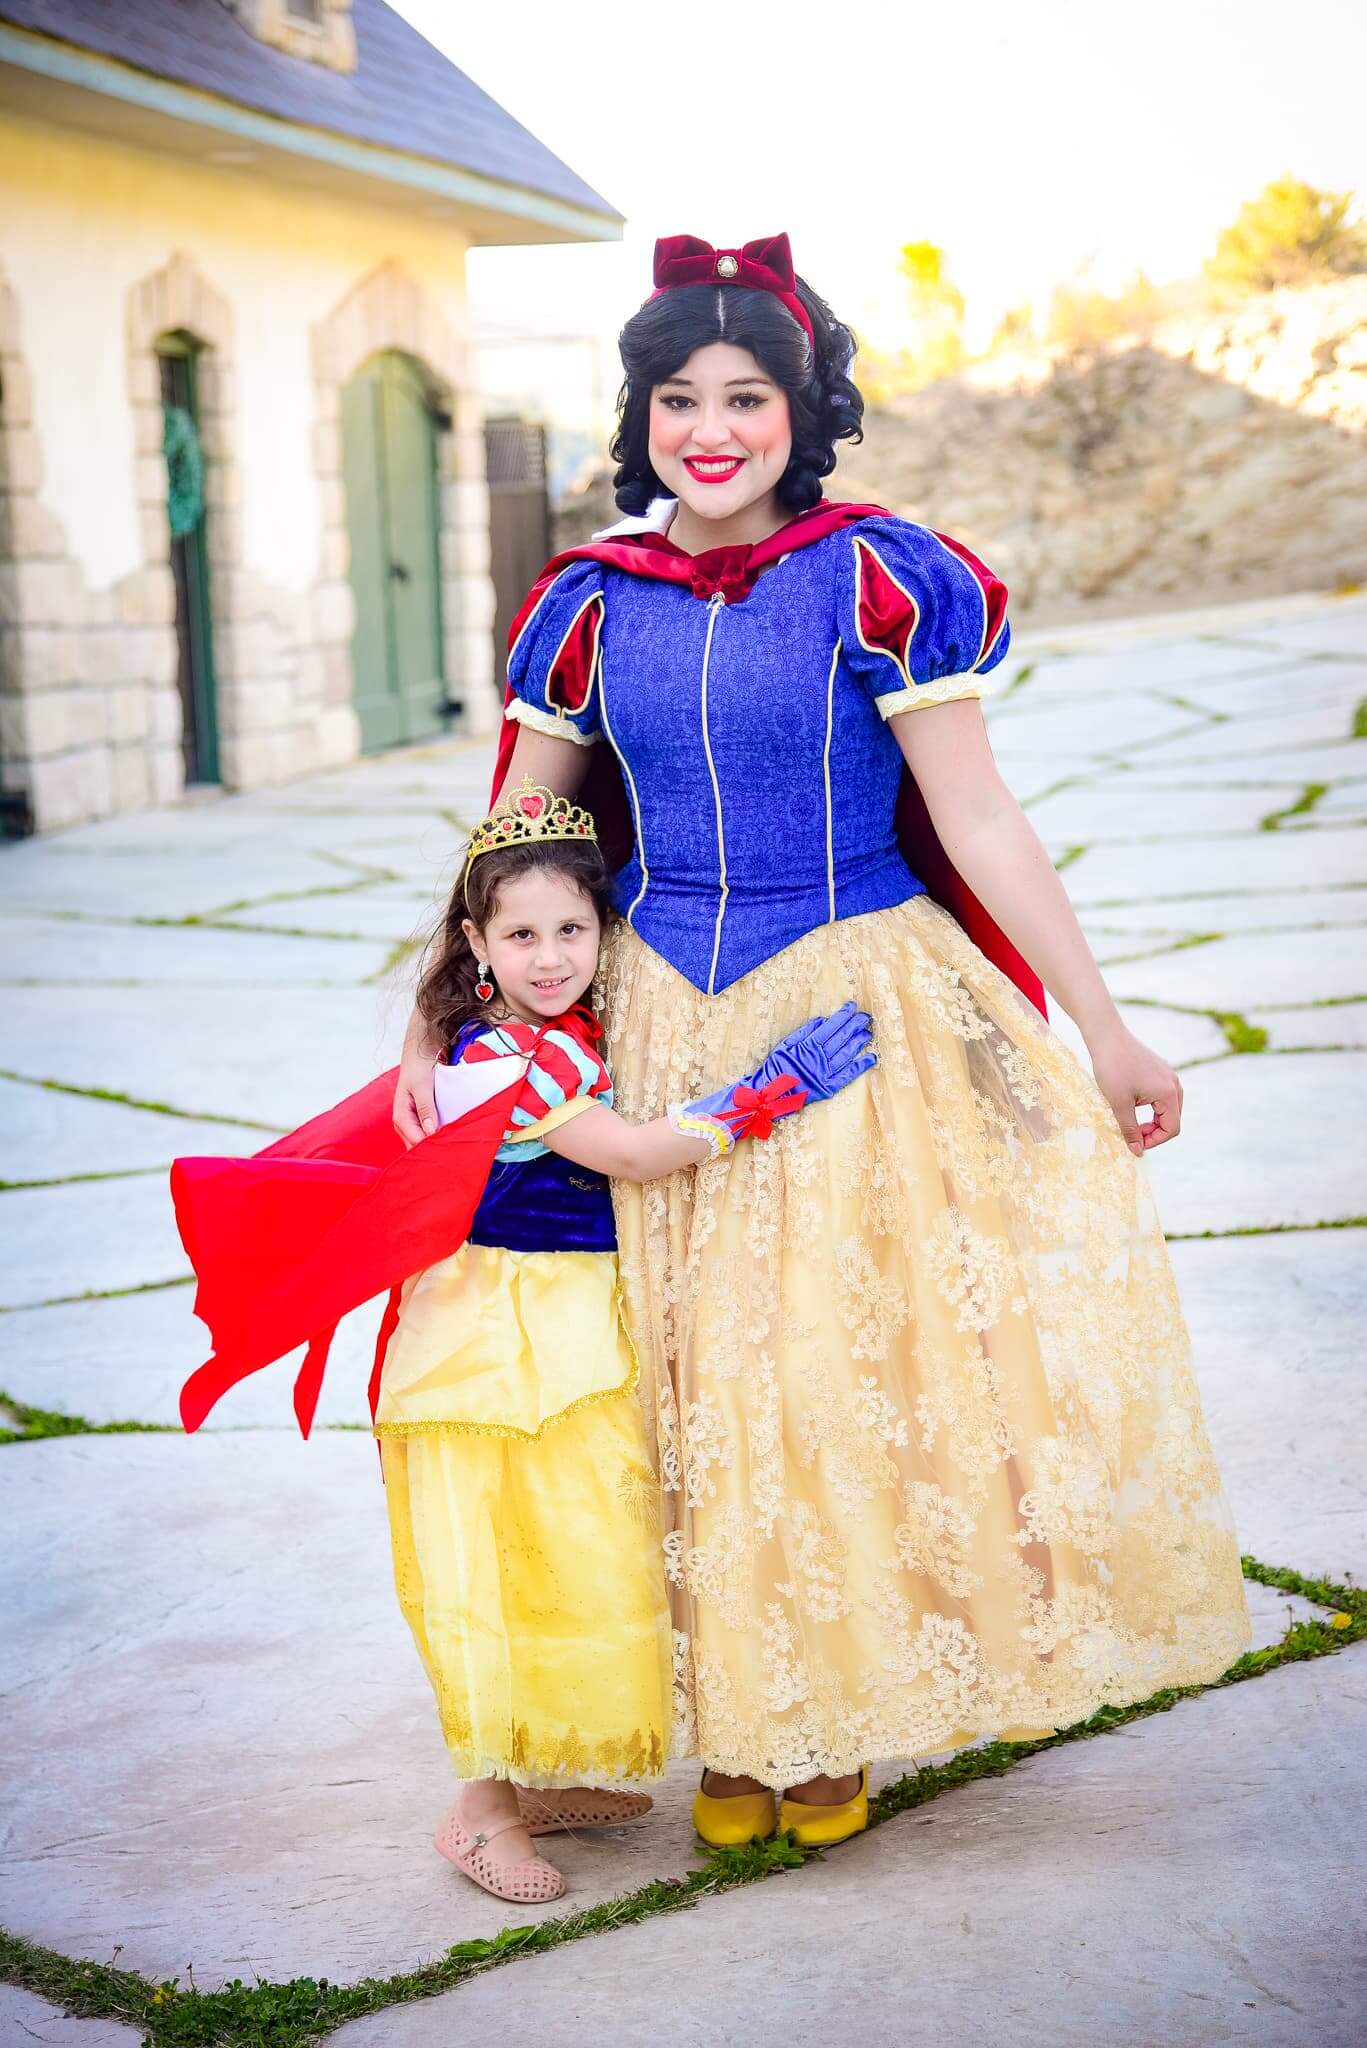 Snow White with girl mini me